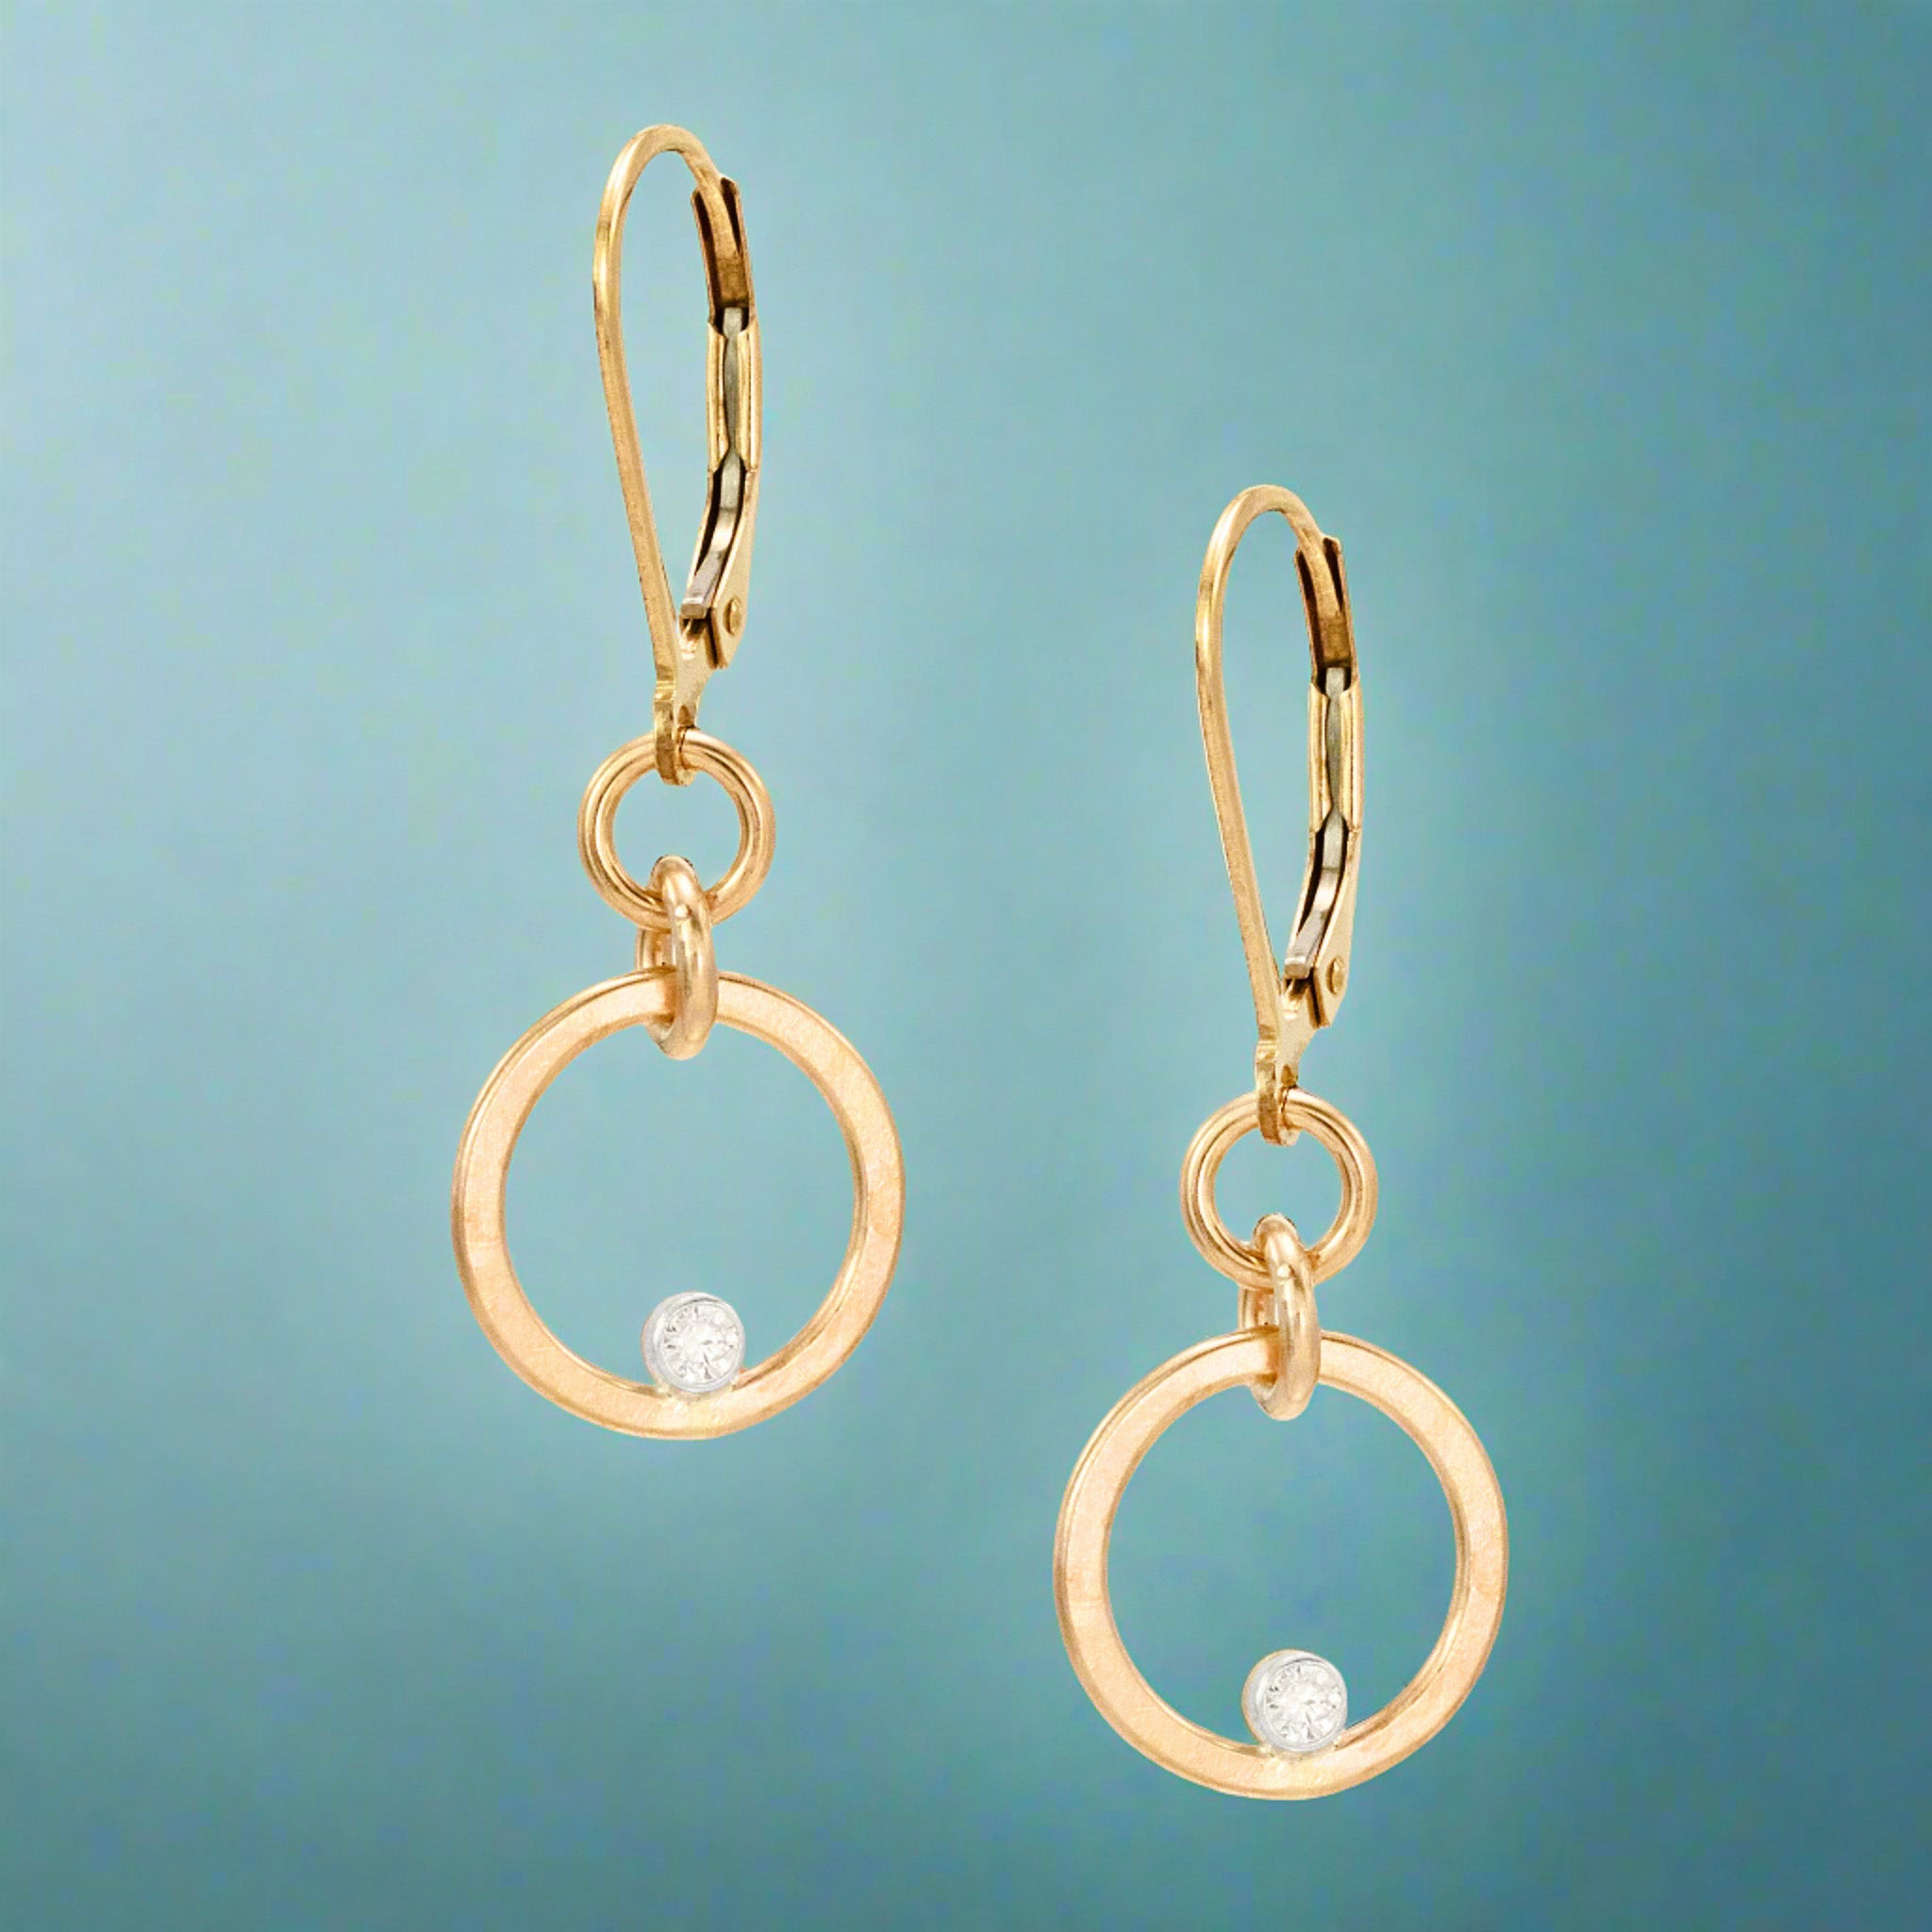 Gilded Circle Earrings - Earrings